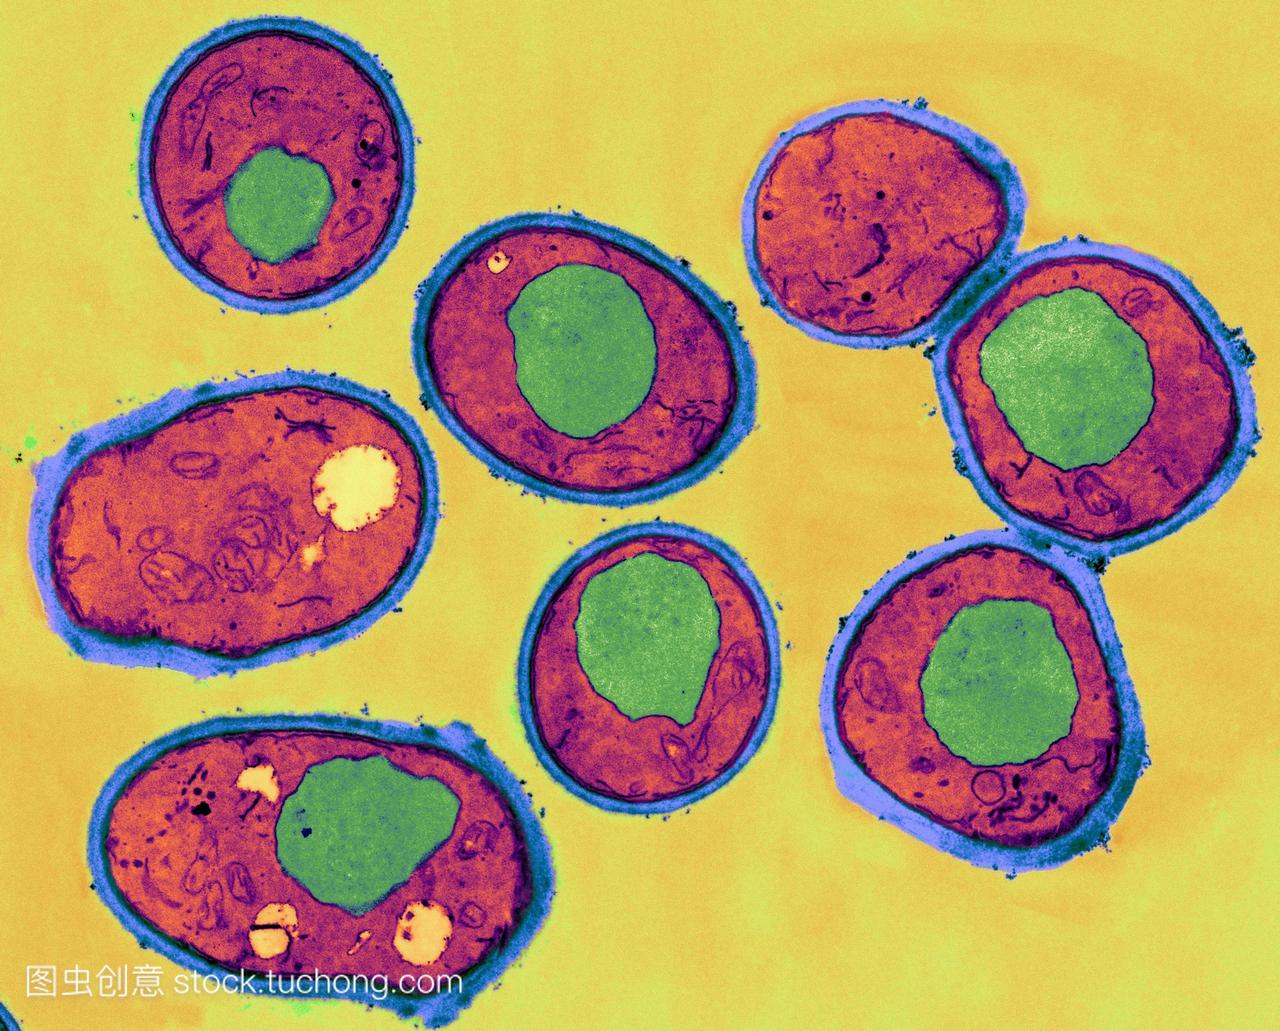 酵母细胞,彩色透射电子显微镜tem。细胞壁呈蓝